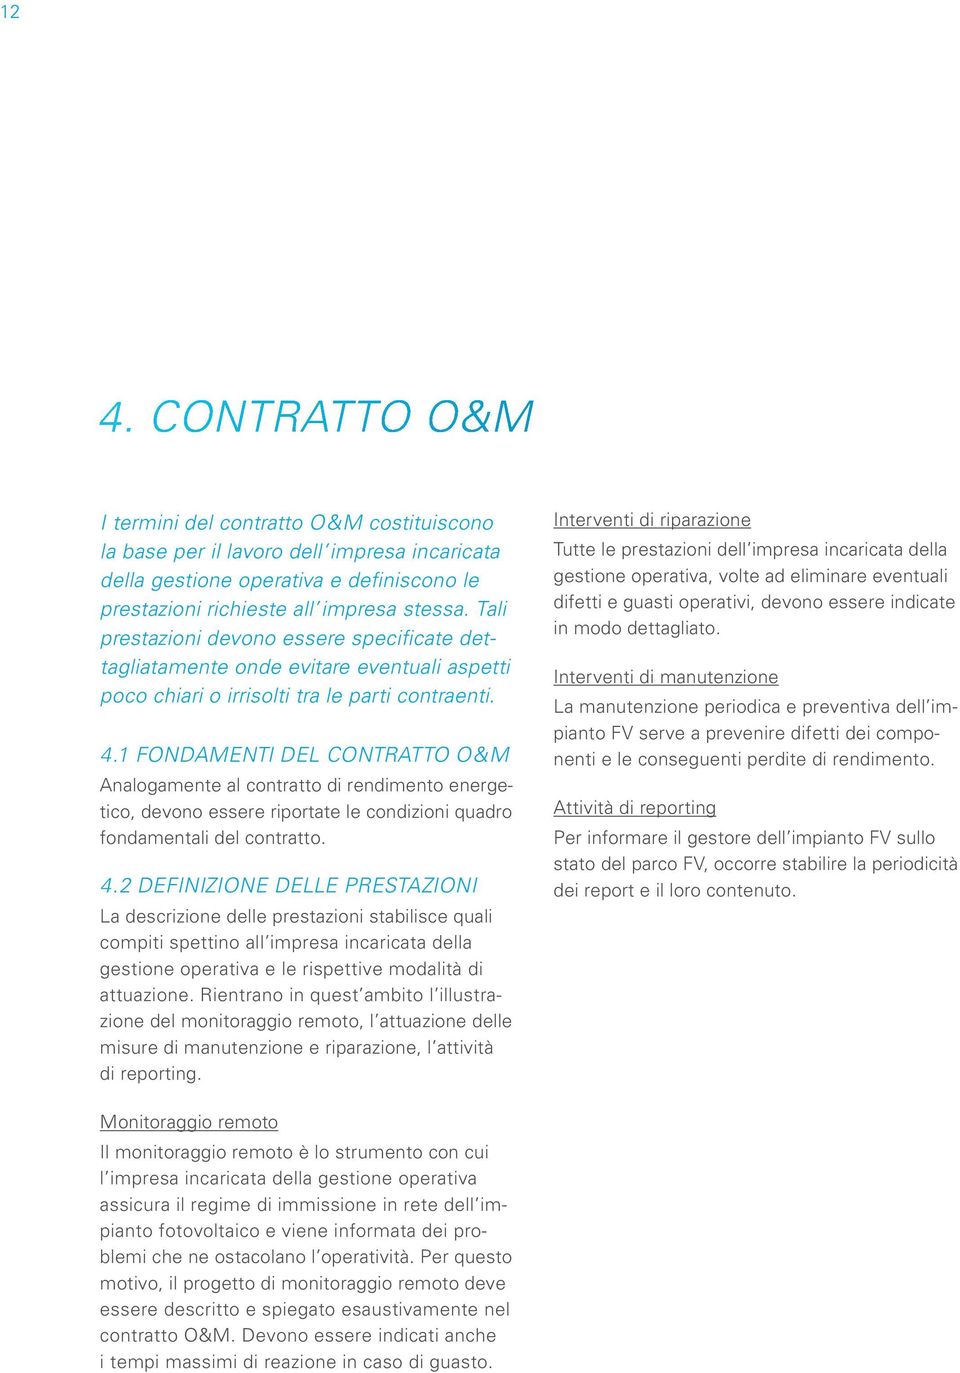 1 Fondamenti del contratto O&M Analogamente al contratto di rendimento energetico, devono essere riportate le condizioni quadro fondamentali del contratto. 4.